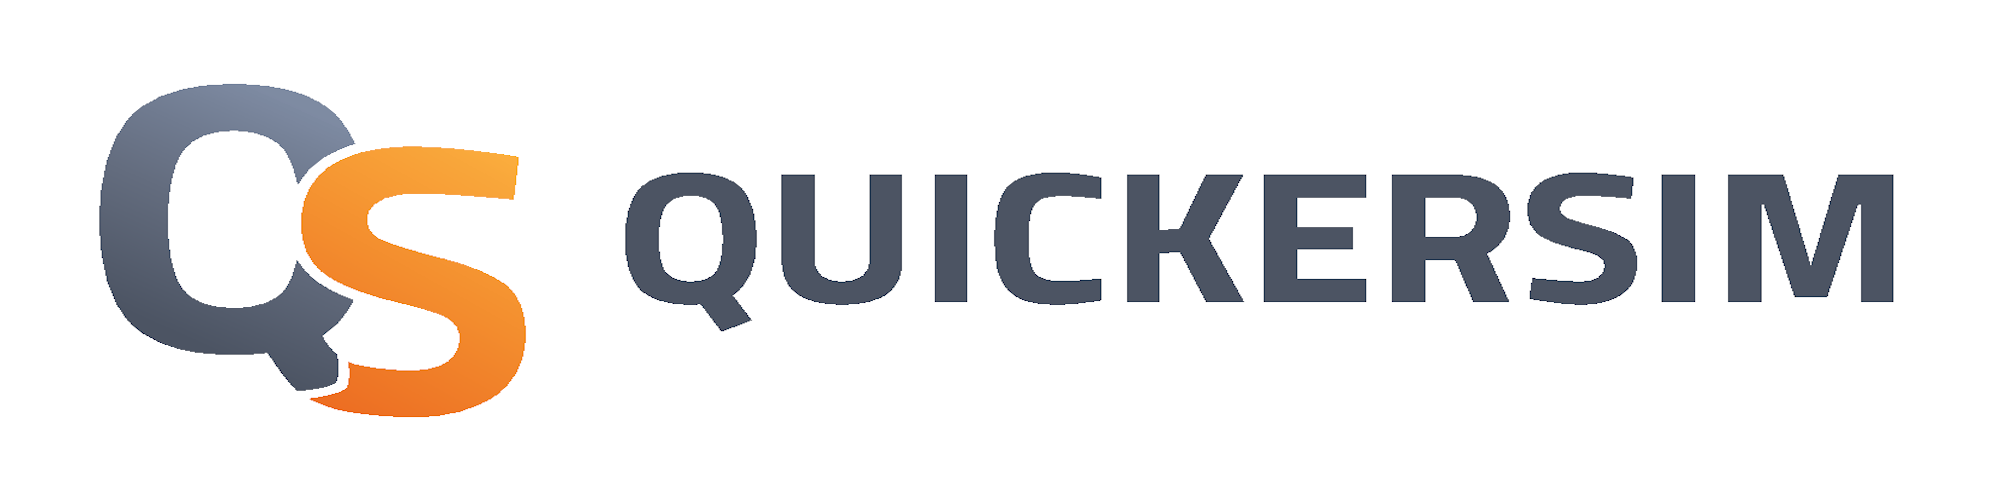 QuickerSim_logo_gradient_color